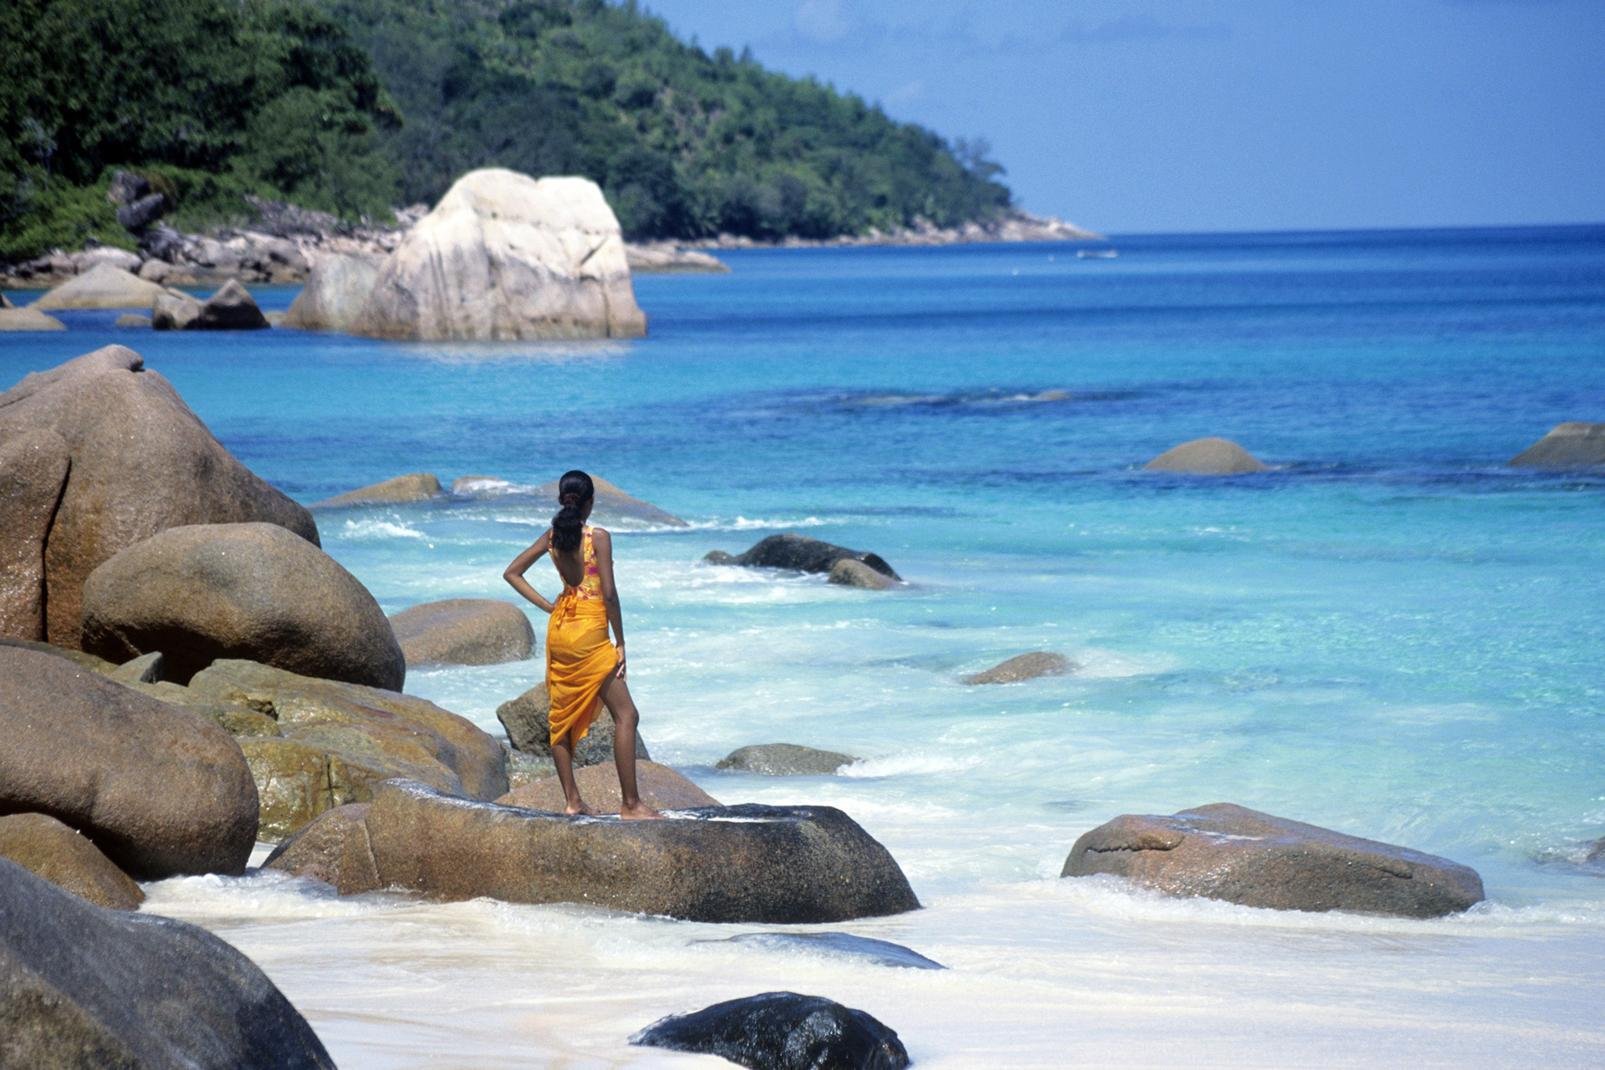 Praslin ist mit einer Fläche von 26 km² die zweitgrößte Insel des Archipels und eine Viertelstunde Flug oder 45 Min. per Boot von Mahé entfernt. Sie ist weniger bergig als Mahé, ist dafür aber für ihr außerordentliches Vallée de Mai berühmt, ein wahrer Pflanzentempel, der auch zum Weltnaturerbe der Unesco gehört, wo auch die berühmte Seychellen-Nuss wächst. Man muss für dieses Schutzgebiet zwar Eintritt ...